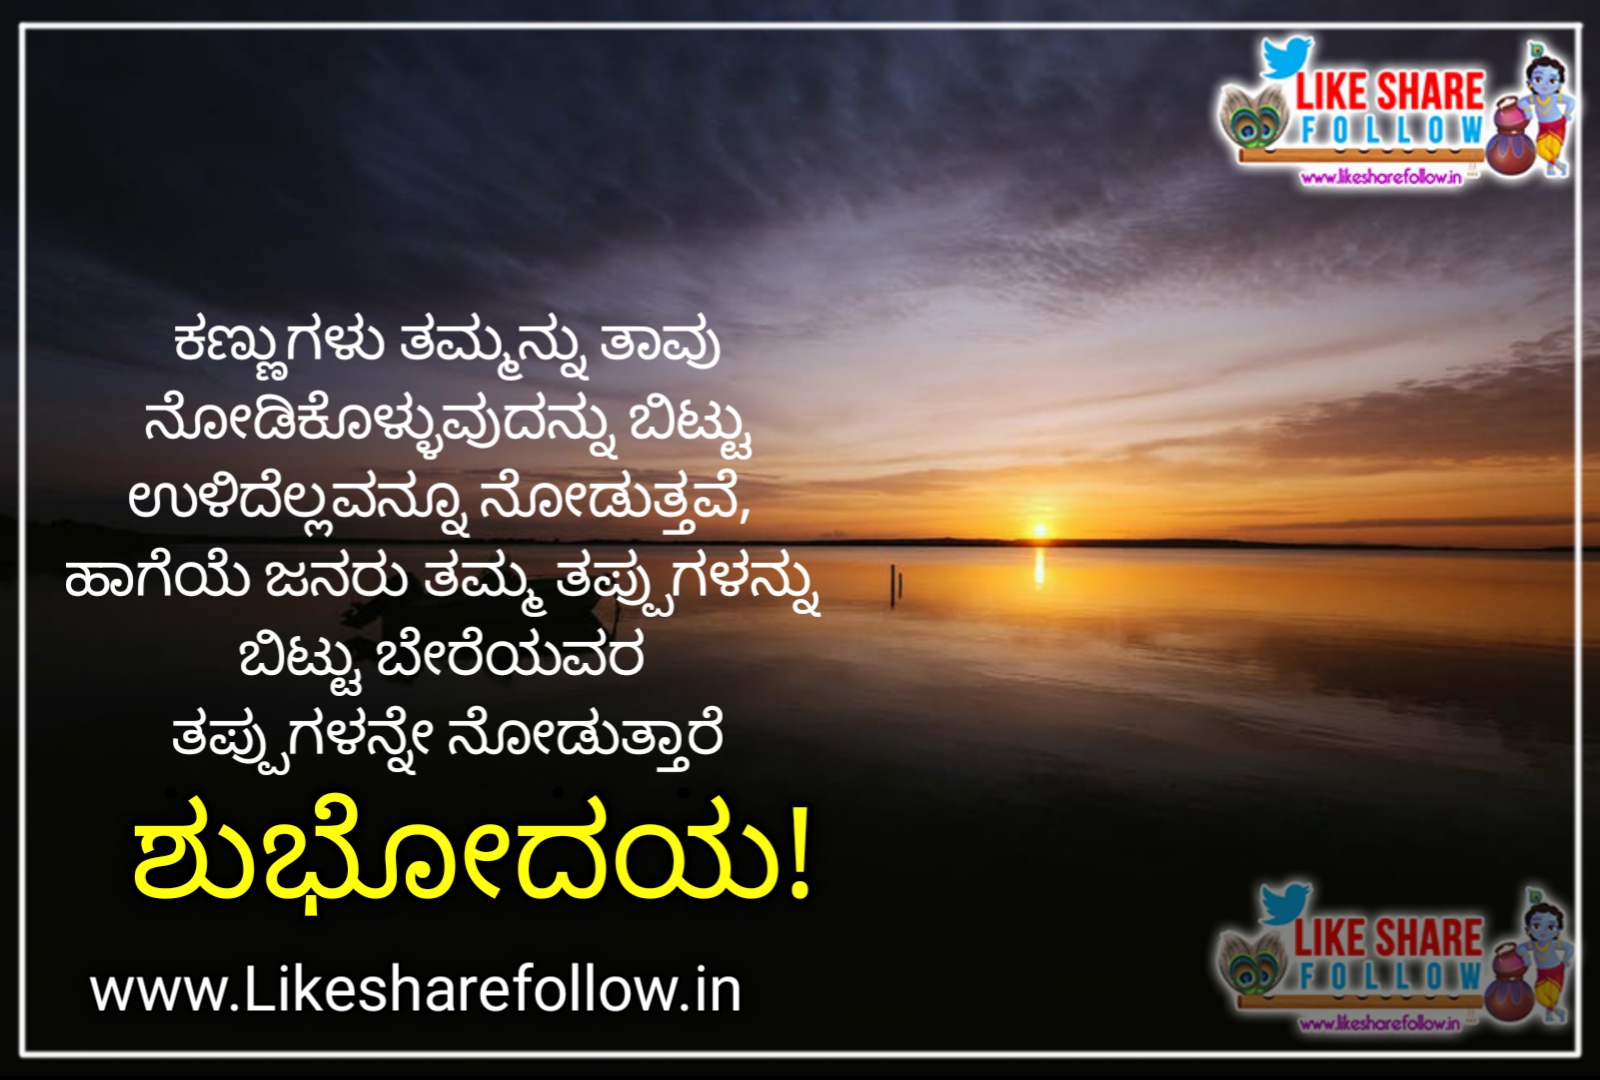 Shubhodaya Quotes In Kannada | QUOTES GARDEN TELUGU | Telugu Quotes